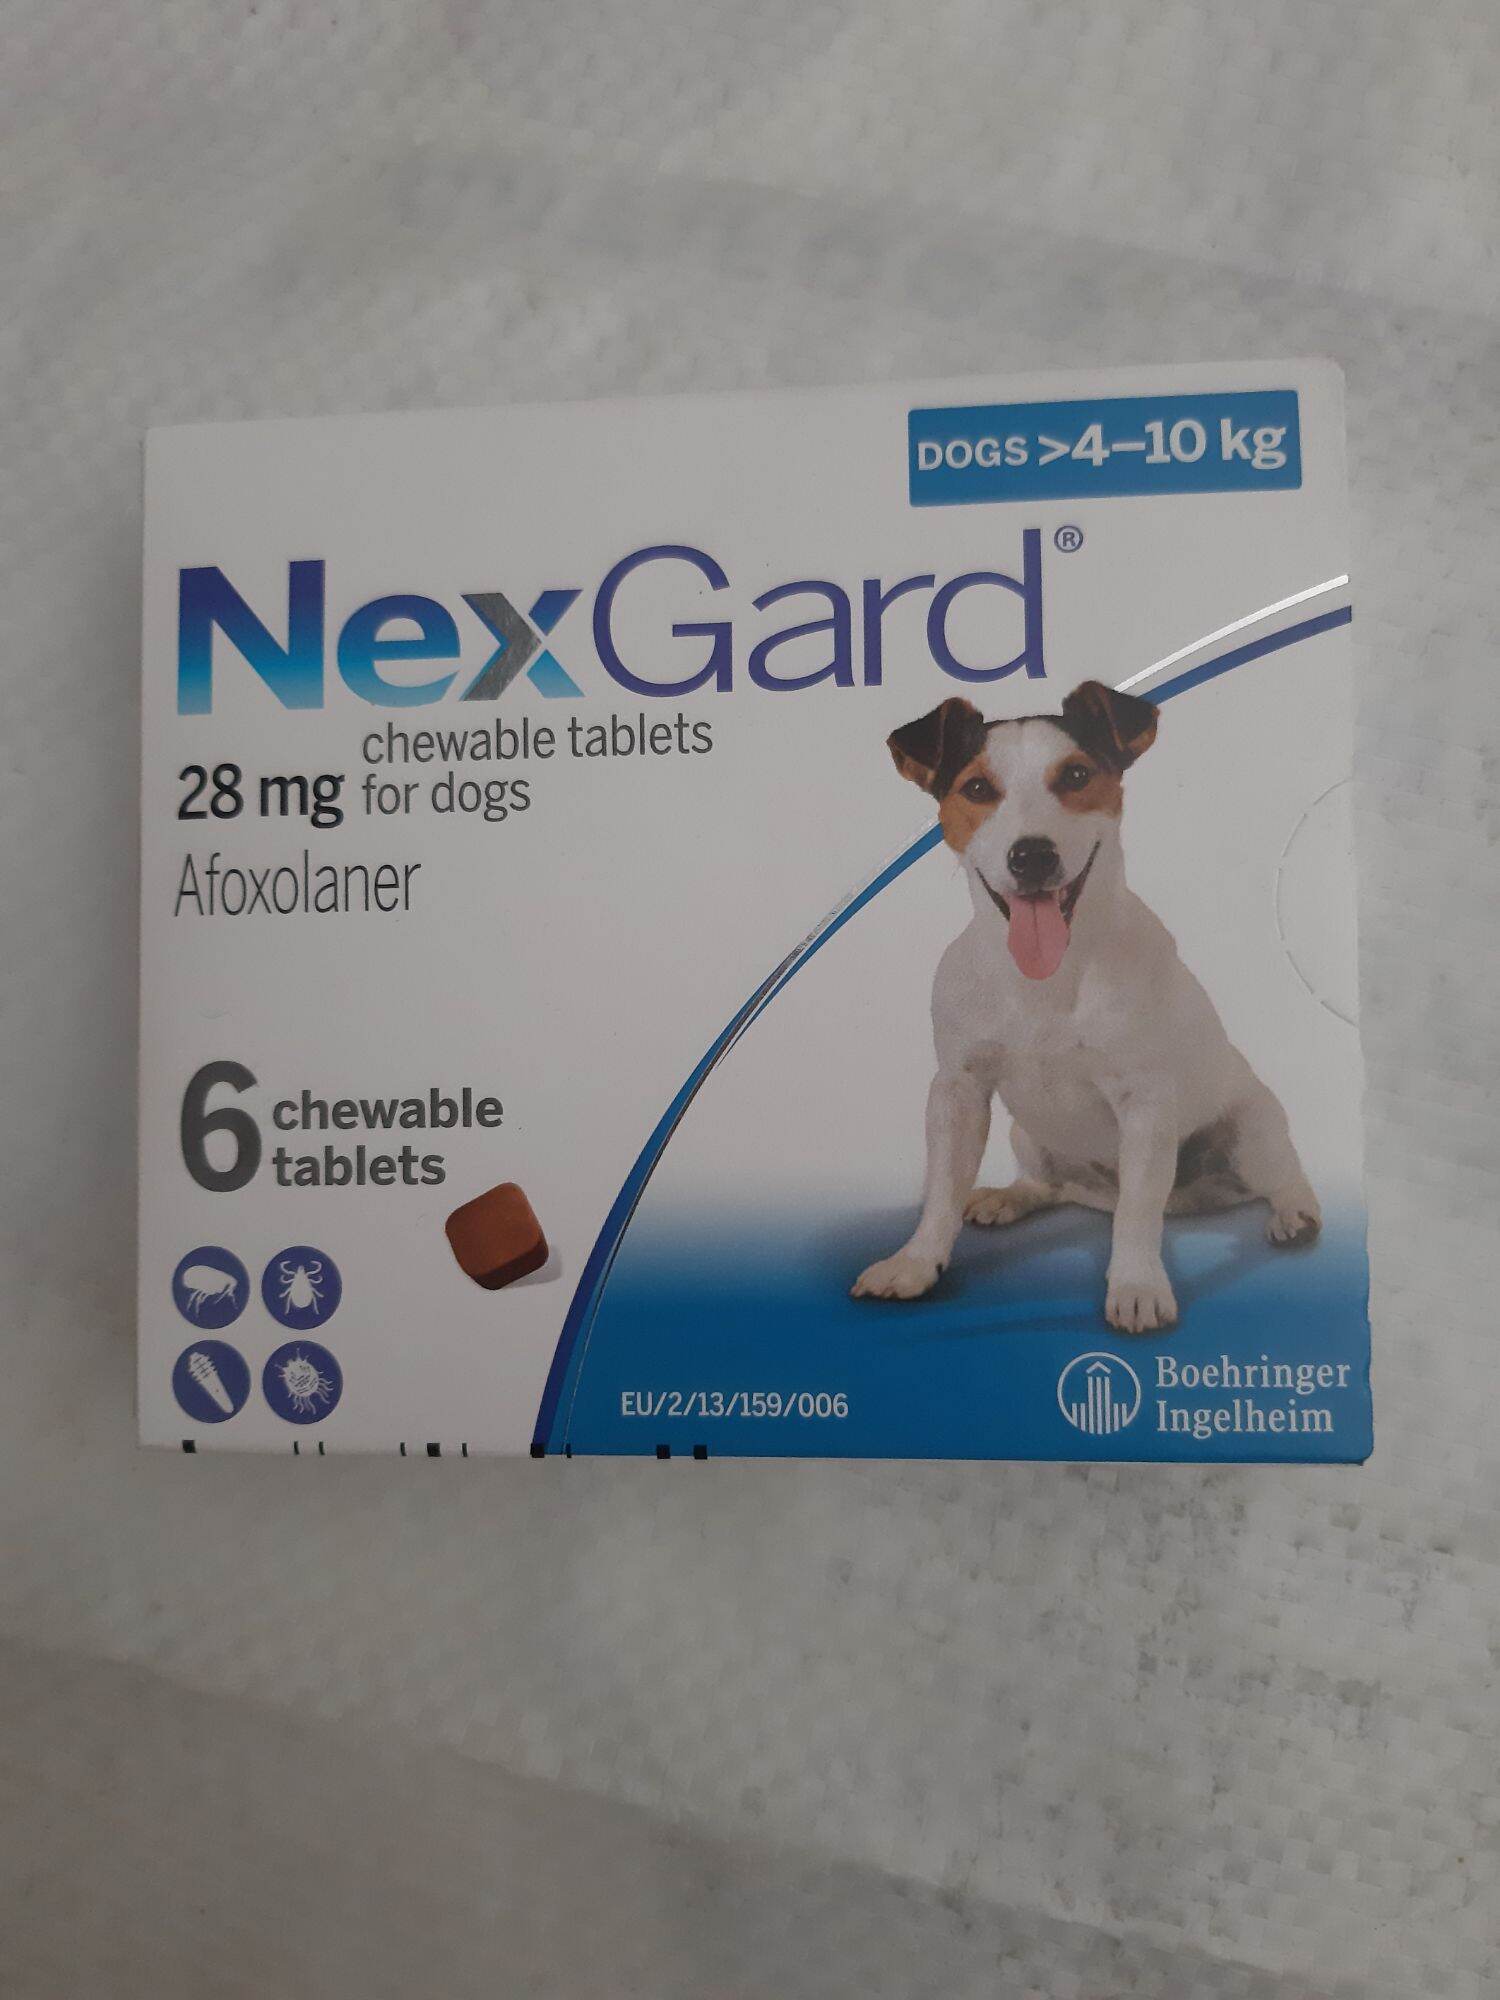 VIÊN-NexGard Dog >4-10kg-trị ve,bọ chét,ghẻ cái,mò bao lông.